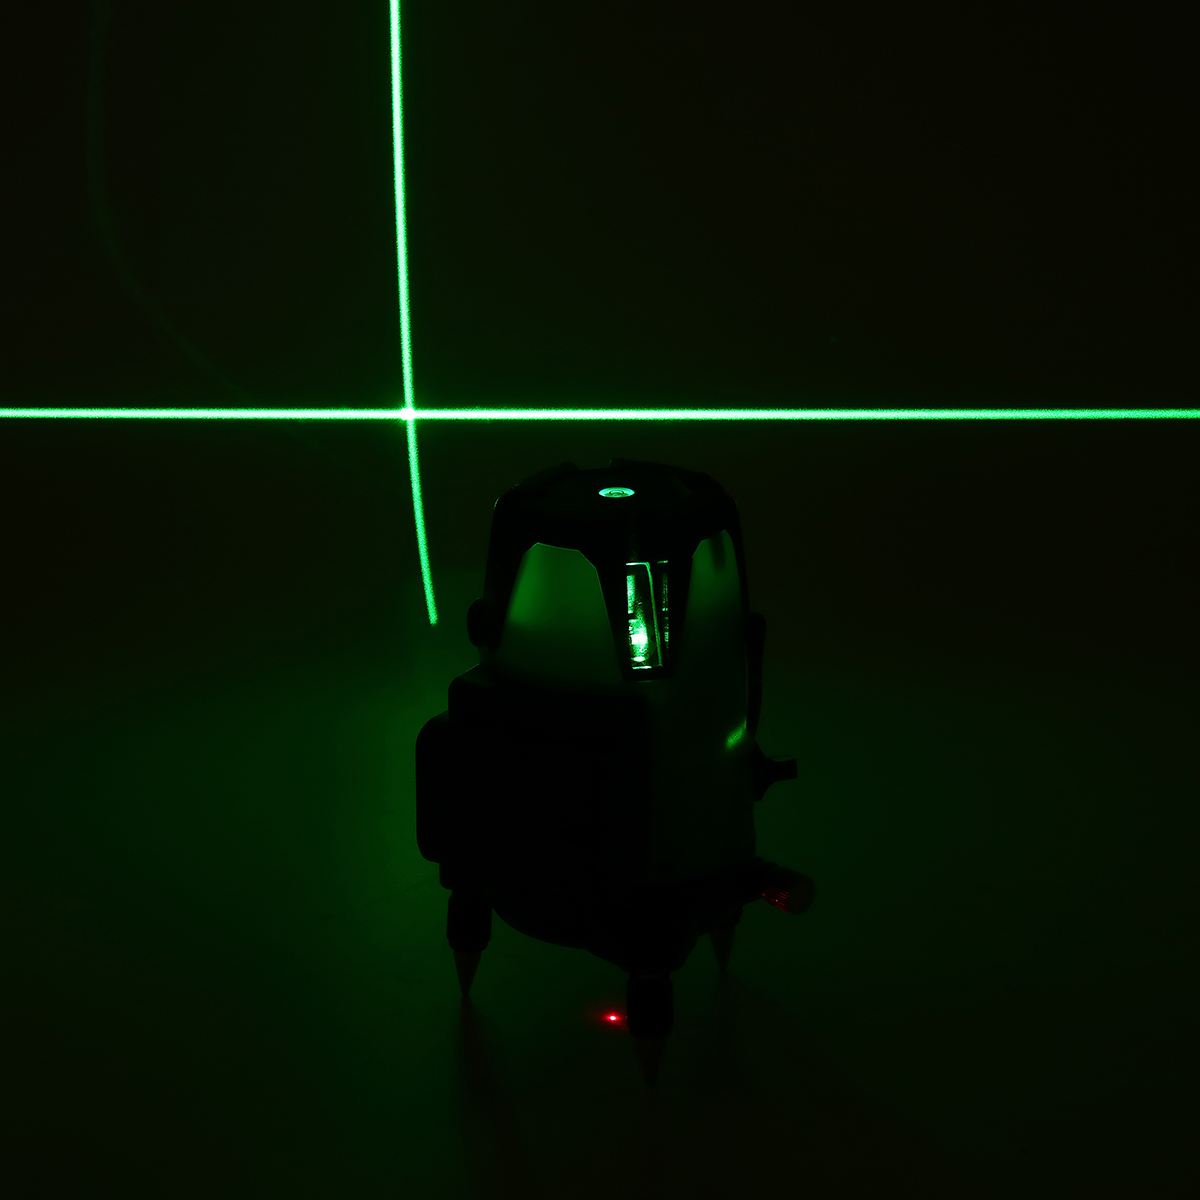 5-Line-Laser-Level-Green-Light-Self-Leveling-3D-360deg-Rotary-Cross-Measure-Tools-1774434-10